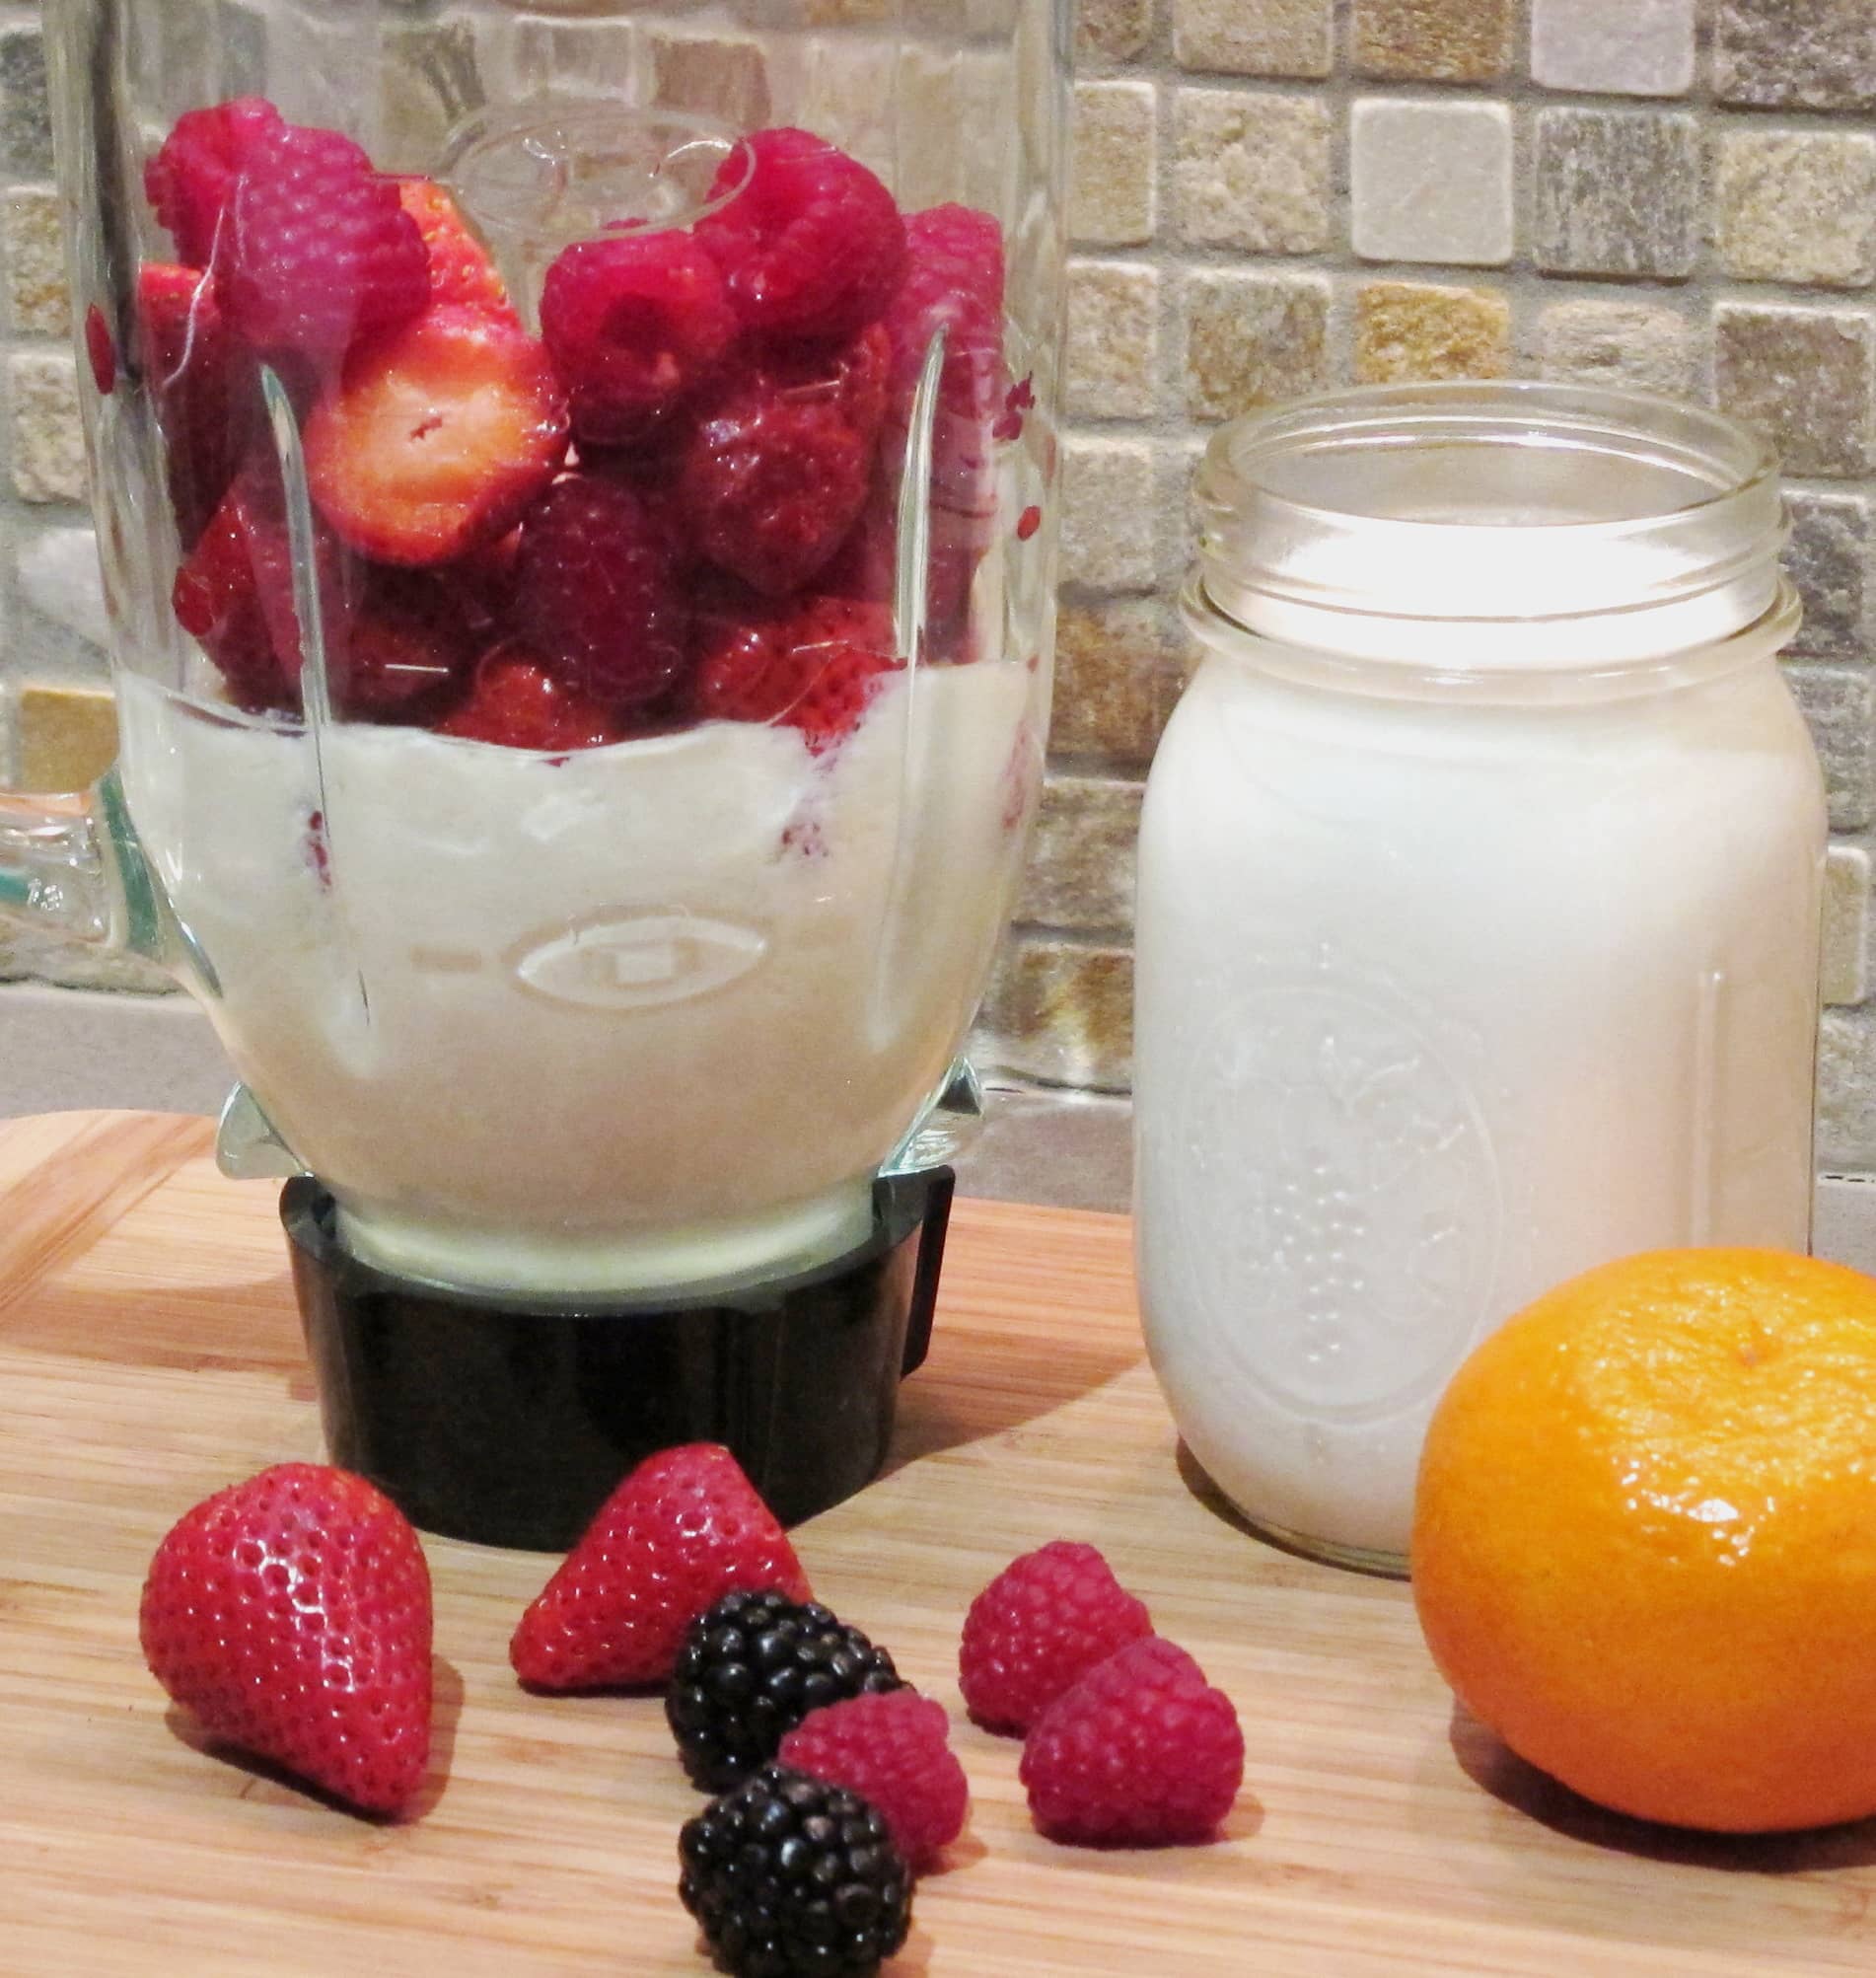 soy yogurt and berries in a blender